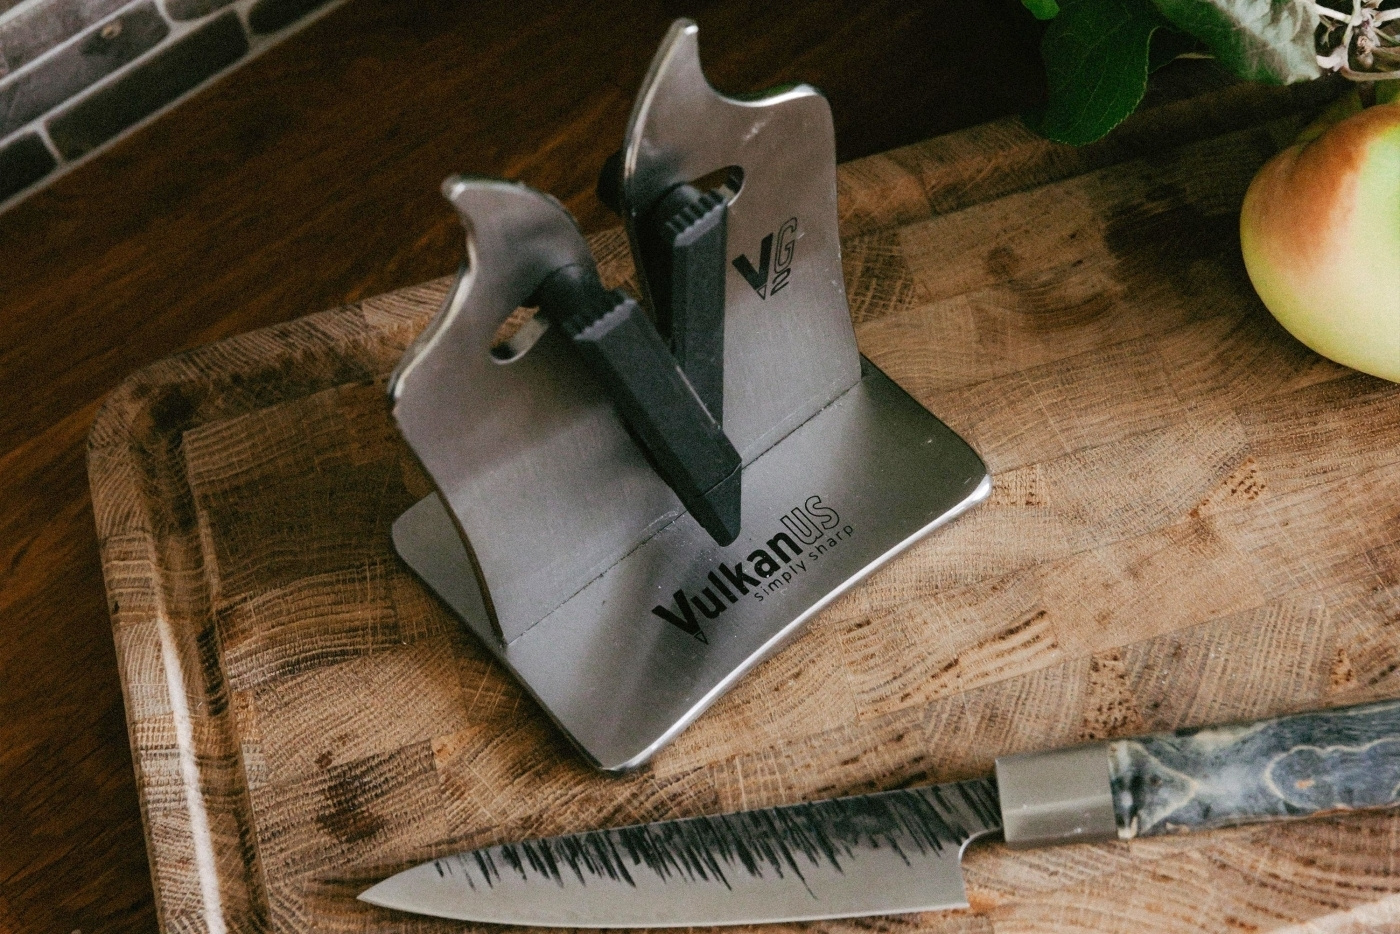 Professional VG2 Knife Sharpener